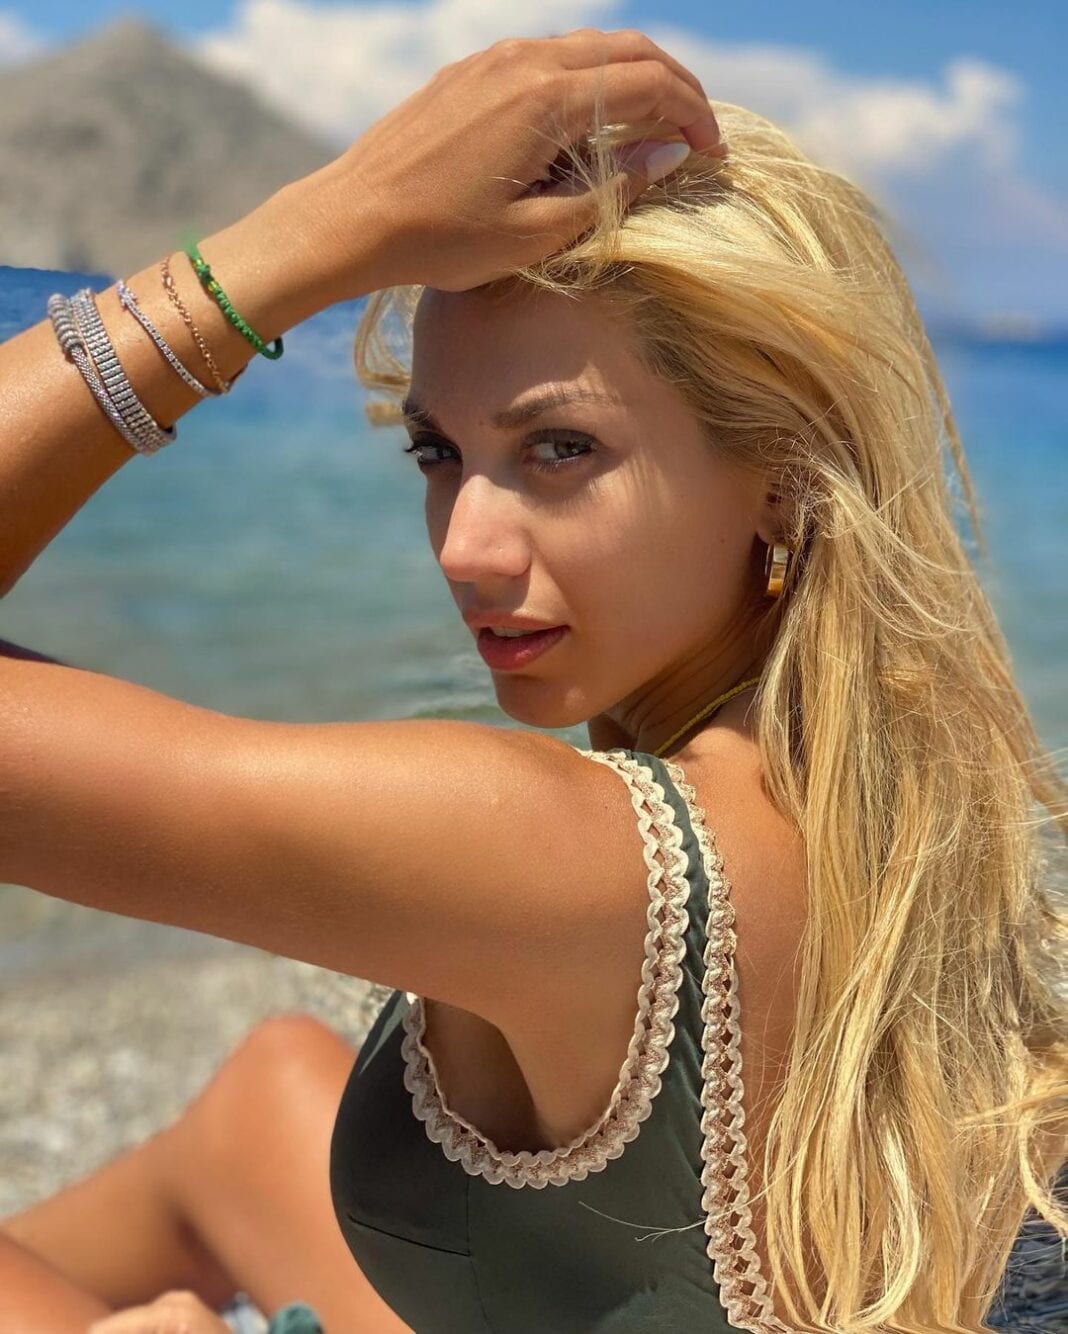 Κωνσταντίνα Σπυροπούλου: Δείτε τη να ποζάρει με ολόσωμο μαγιό! - Η φωτογραφία που δημοσίευσε στο Instagram